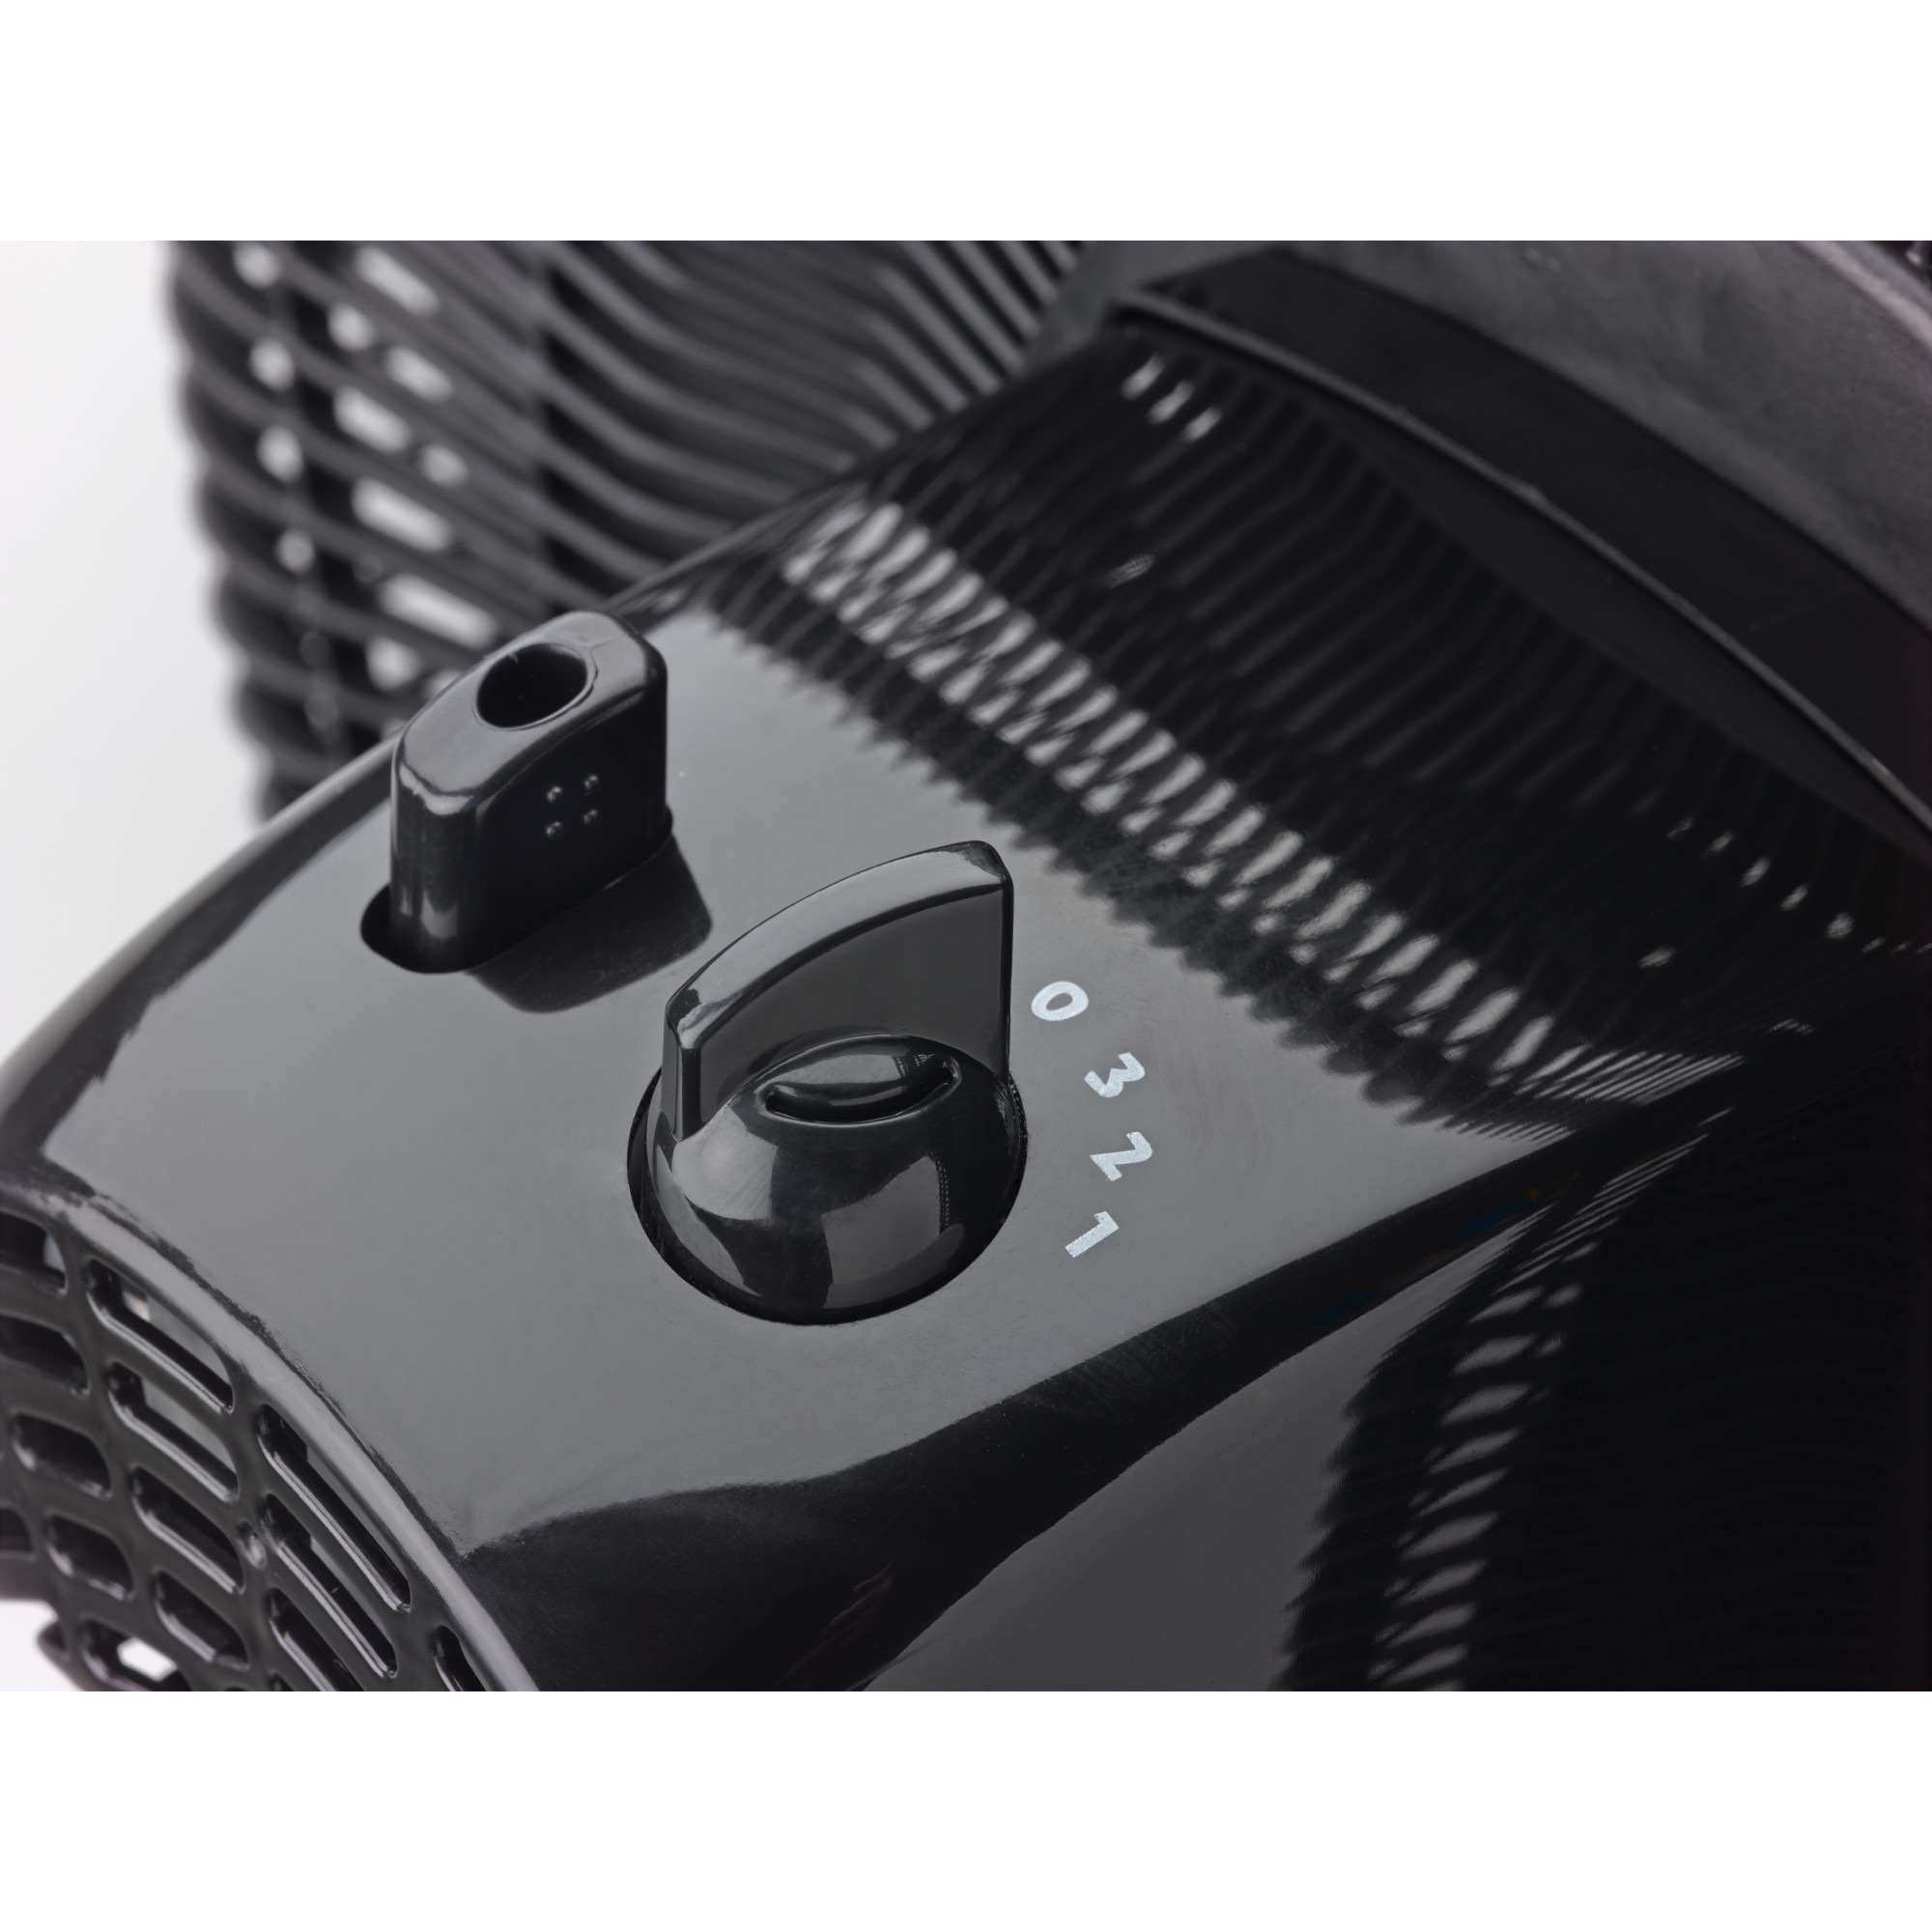 Lasko 16" Oscillating Adjustable Pedestal Fan with 3-Speeds, 47" H, Black, S16500, New - image 9 of 12